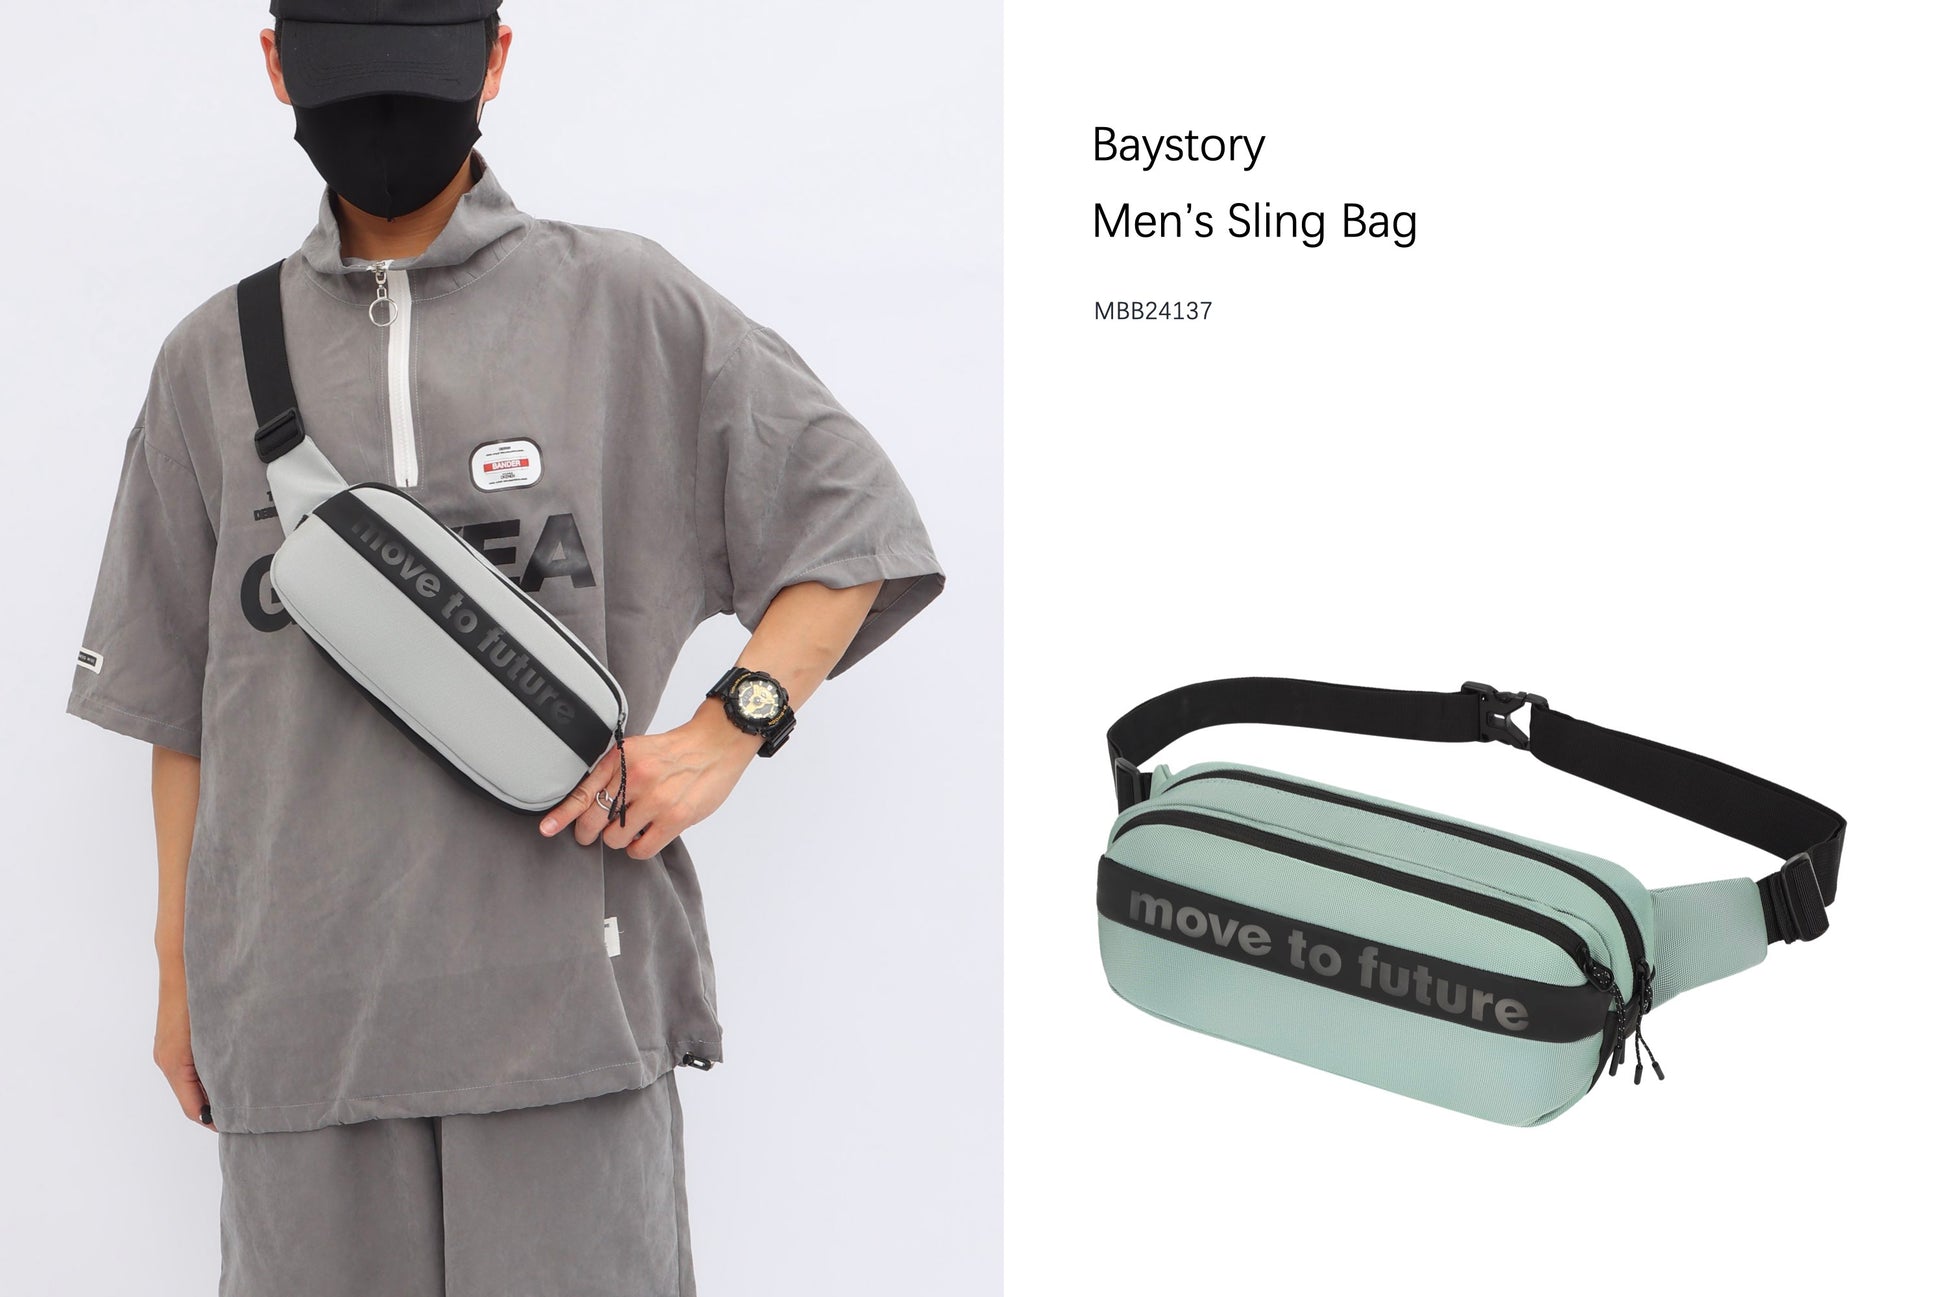 Baystory Men’s Sling Bag MBB24137 - Baystory